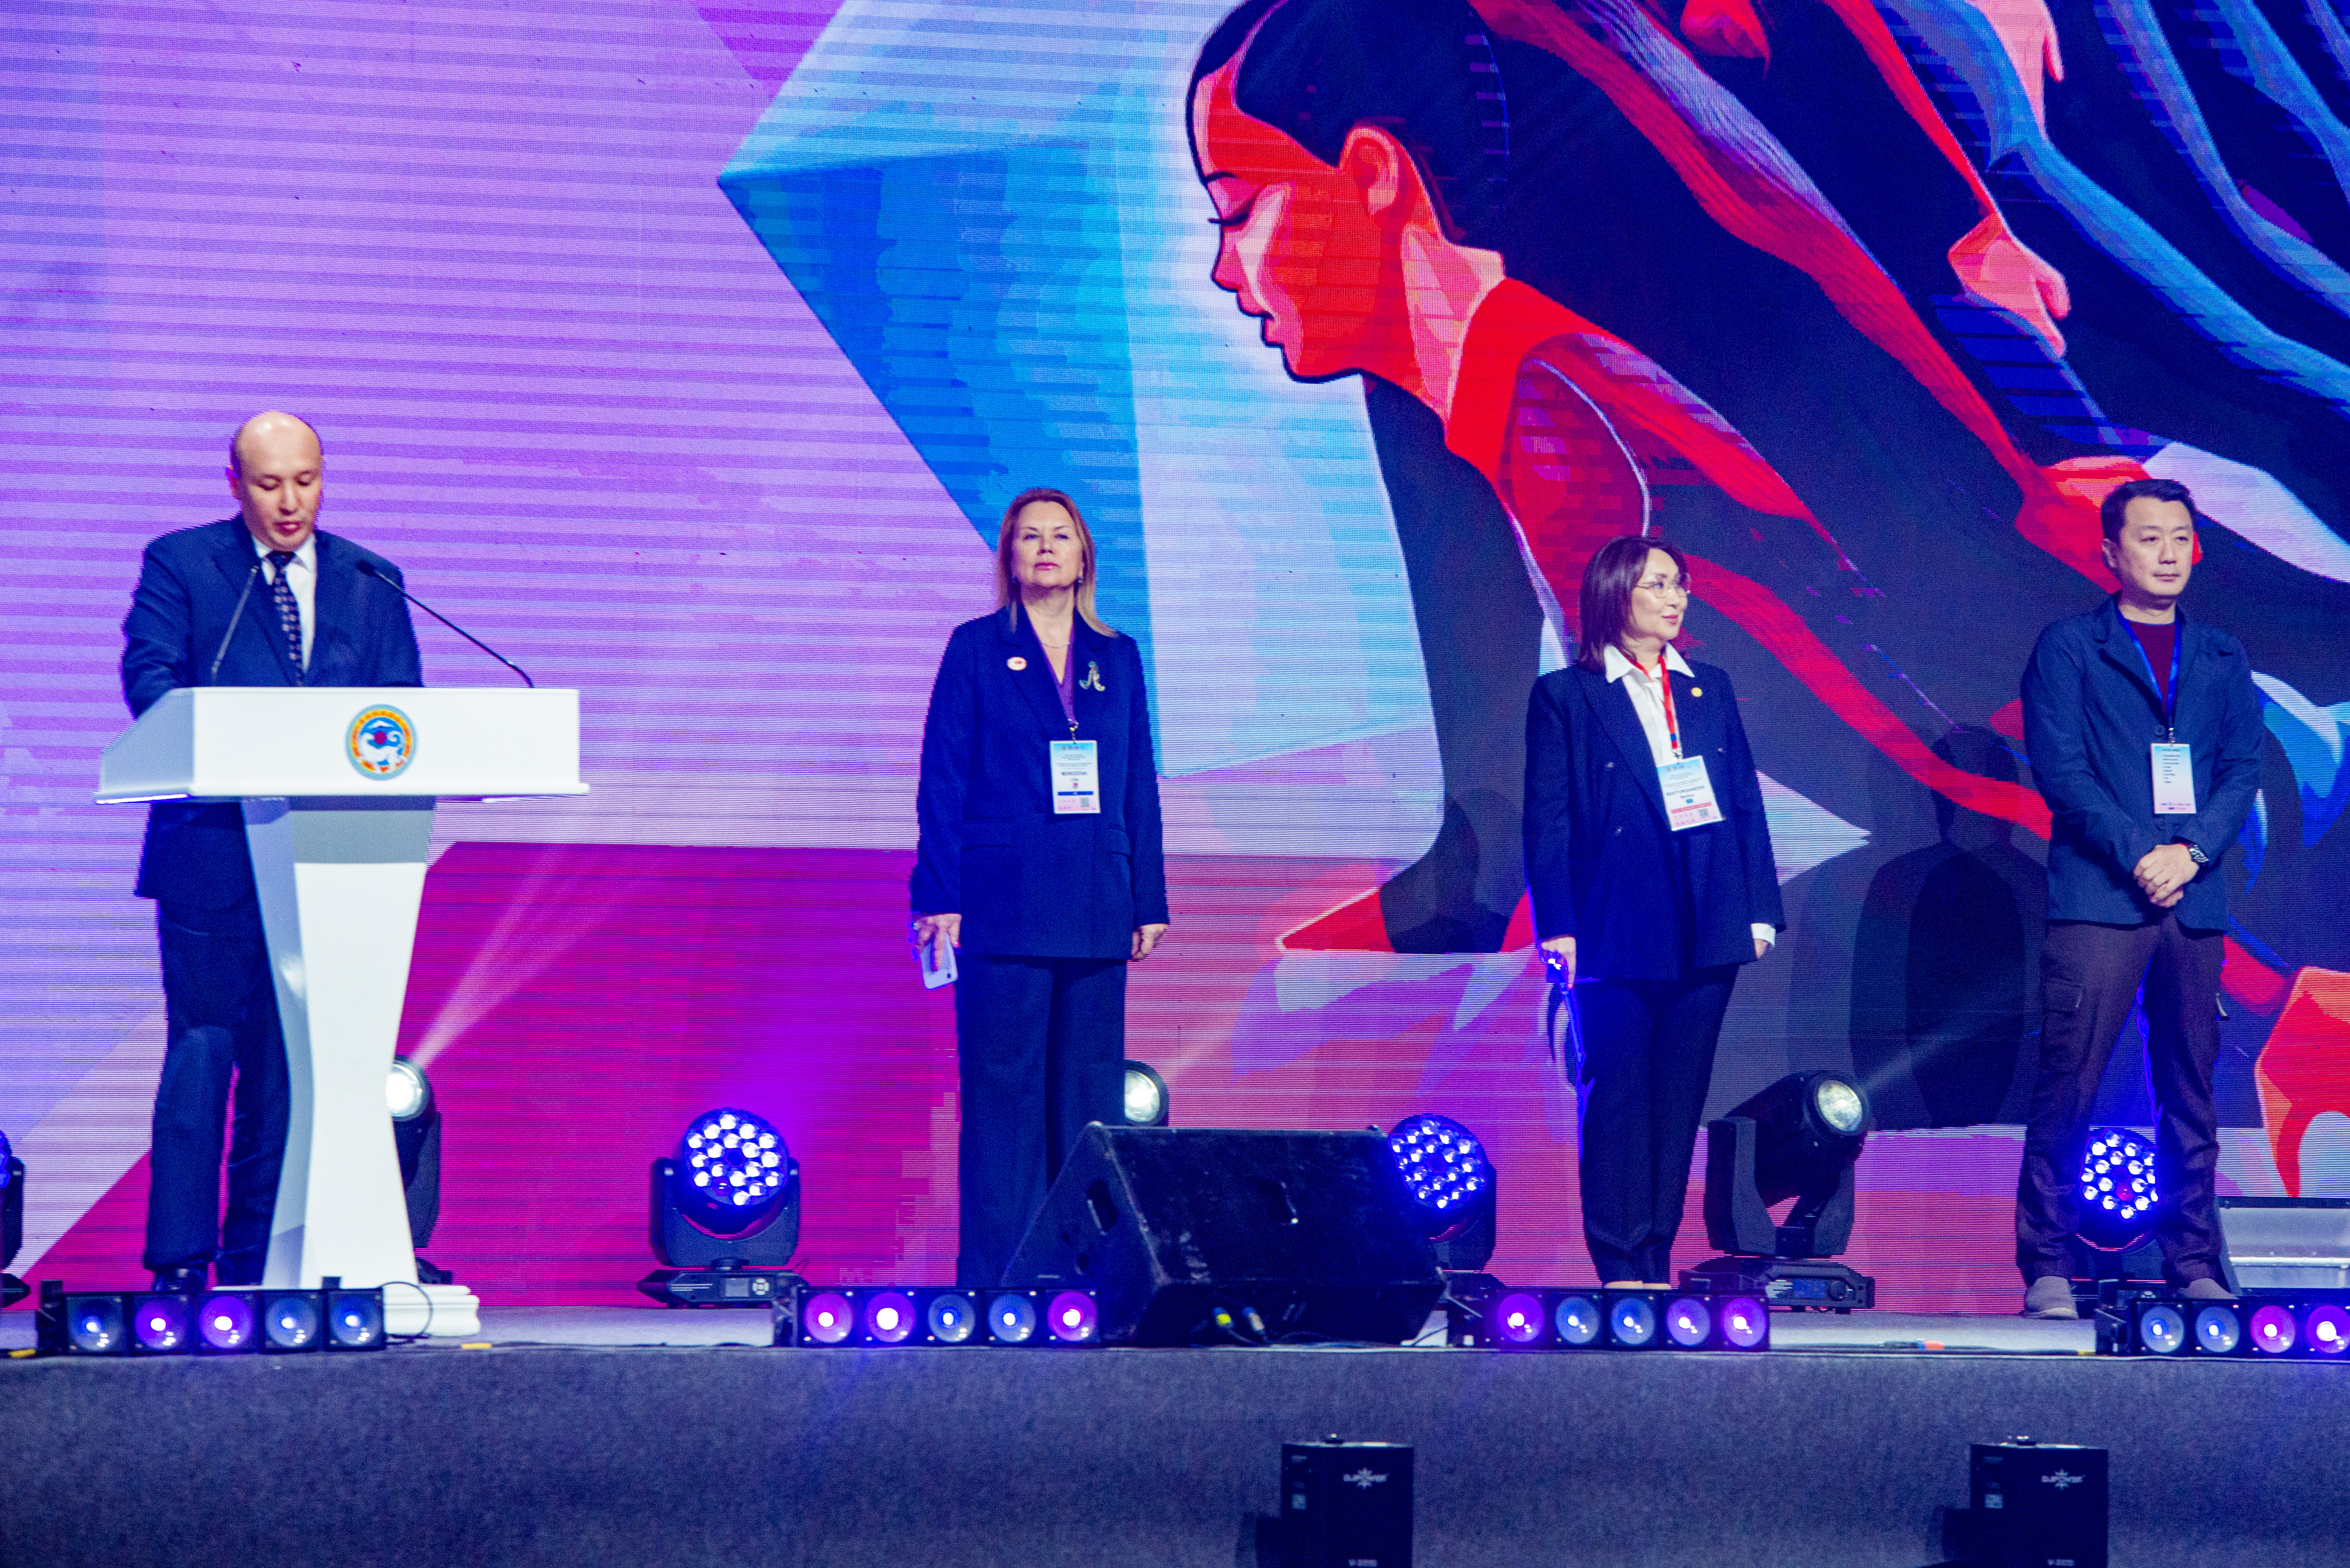 В Алматы состоялось открытие чемпионата мира по эстетической групповой гимнастике